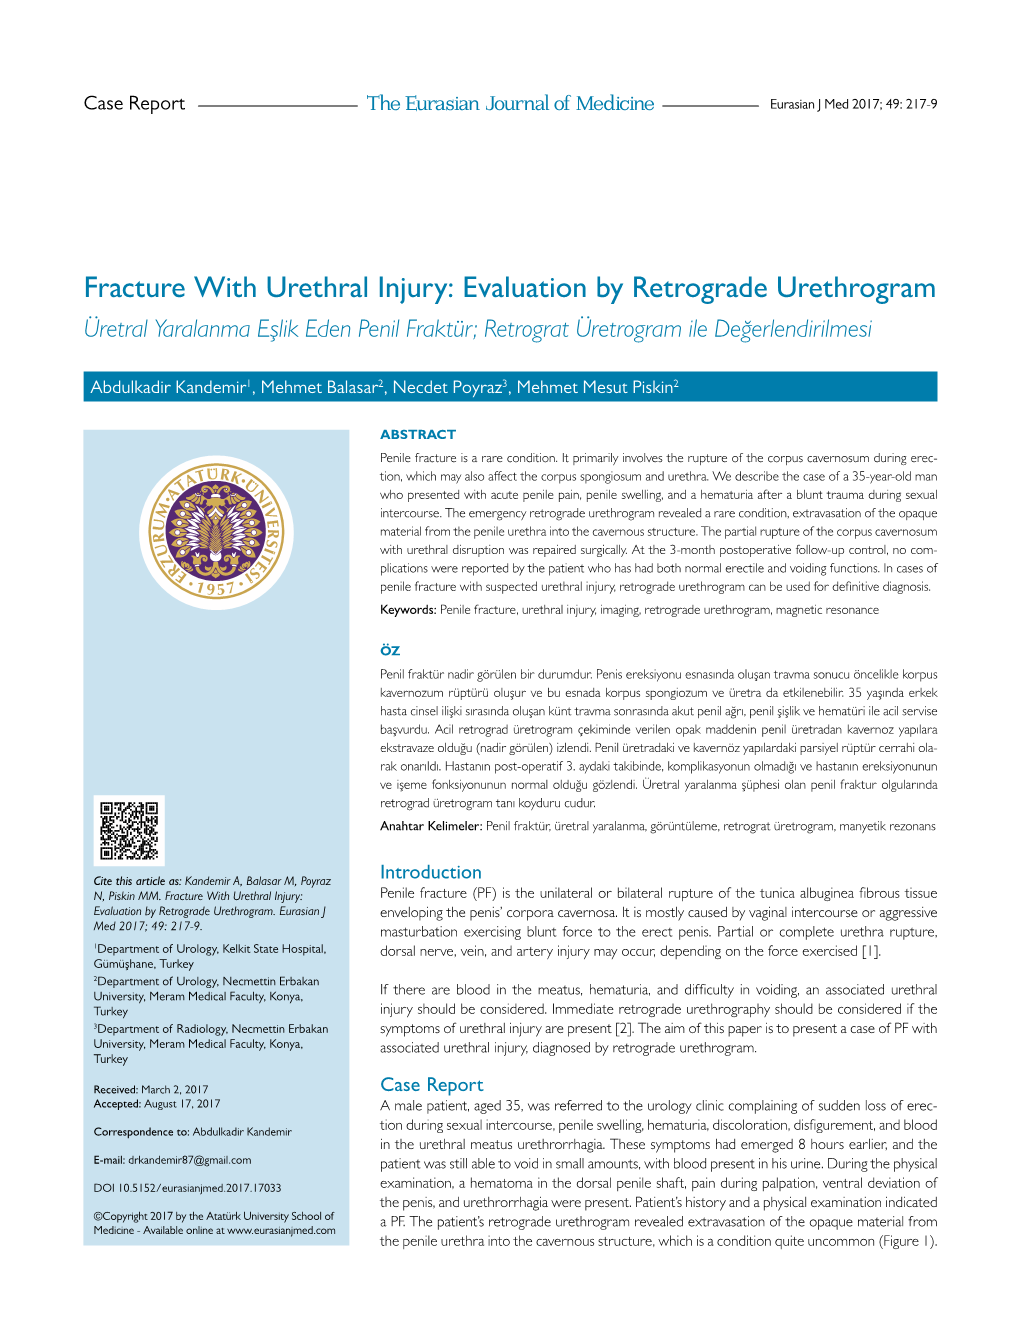 Fracture with Urethral Injury: Evaluation by Retrograde Urethrogram Üretral Yaralanma Eşlik Eden Penil Fraktür; Retrograt Üretrogram Ile Değerlendirilmesi